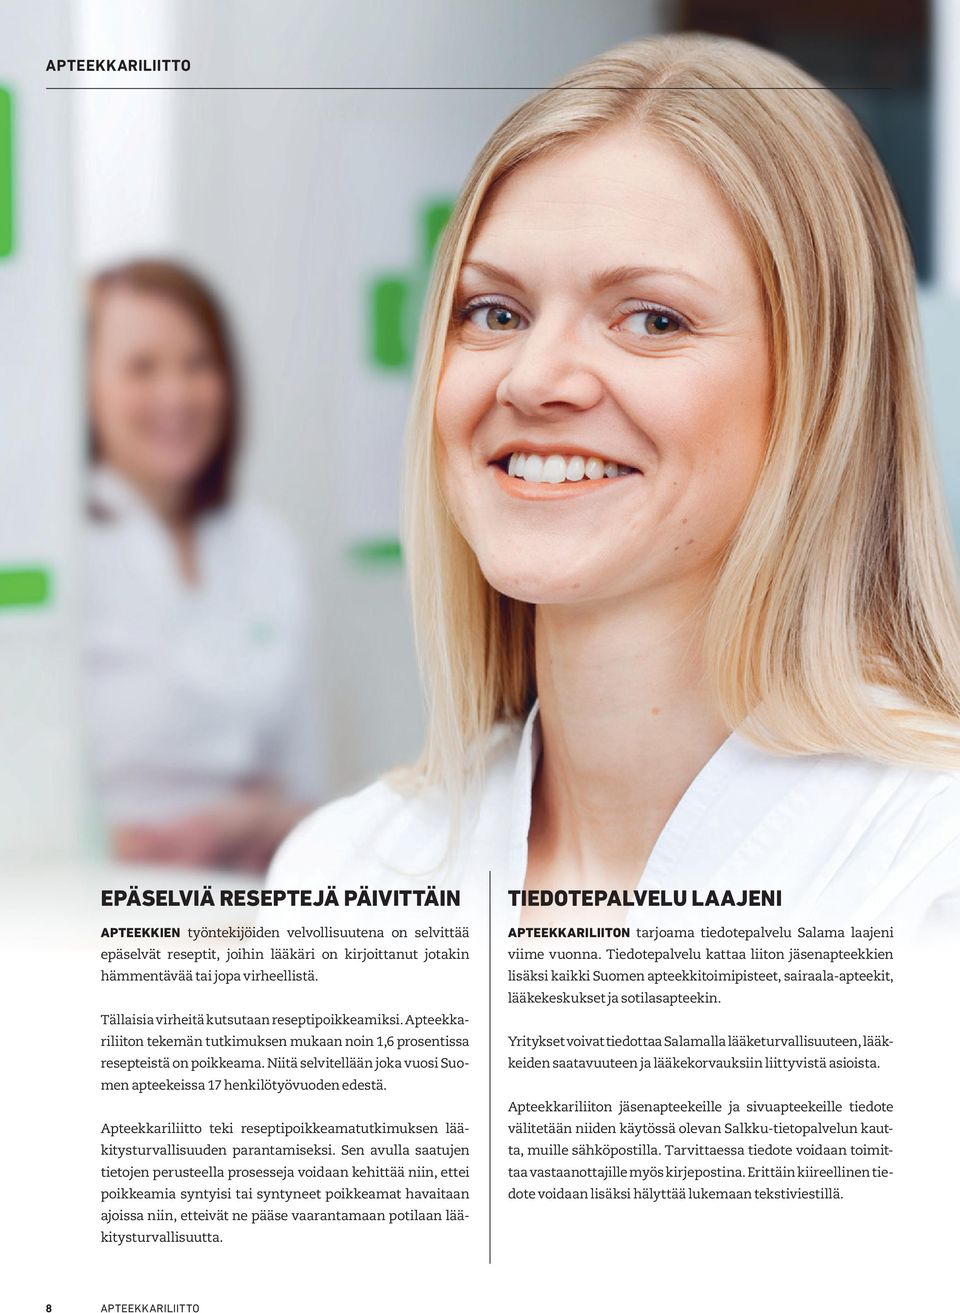 Niitä selvitellään joka vuosi Suomen apteekeissa 17 henkilötyövuoden edestä. Apteekkariliitto teki reseptipoikkeamatutkimuksen lääkitysturvallisuuden parantamiseksi.